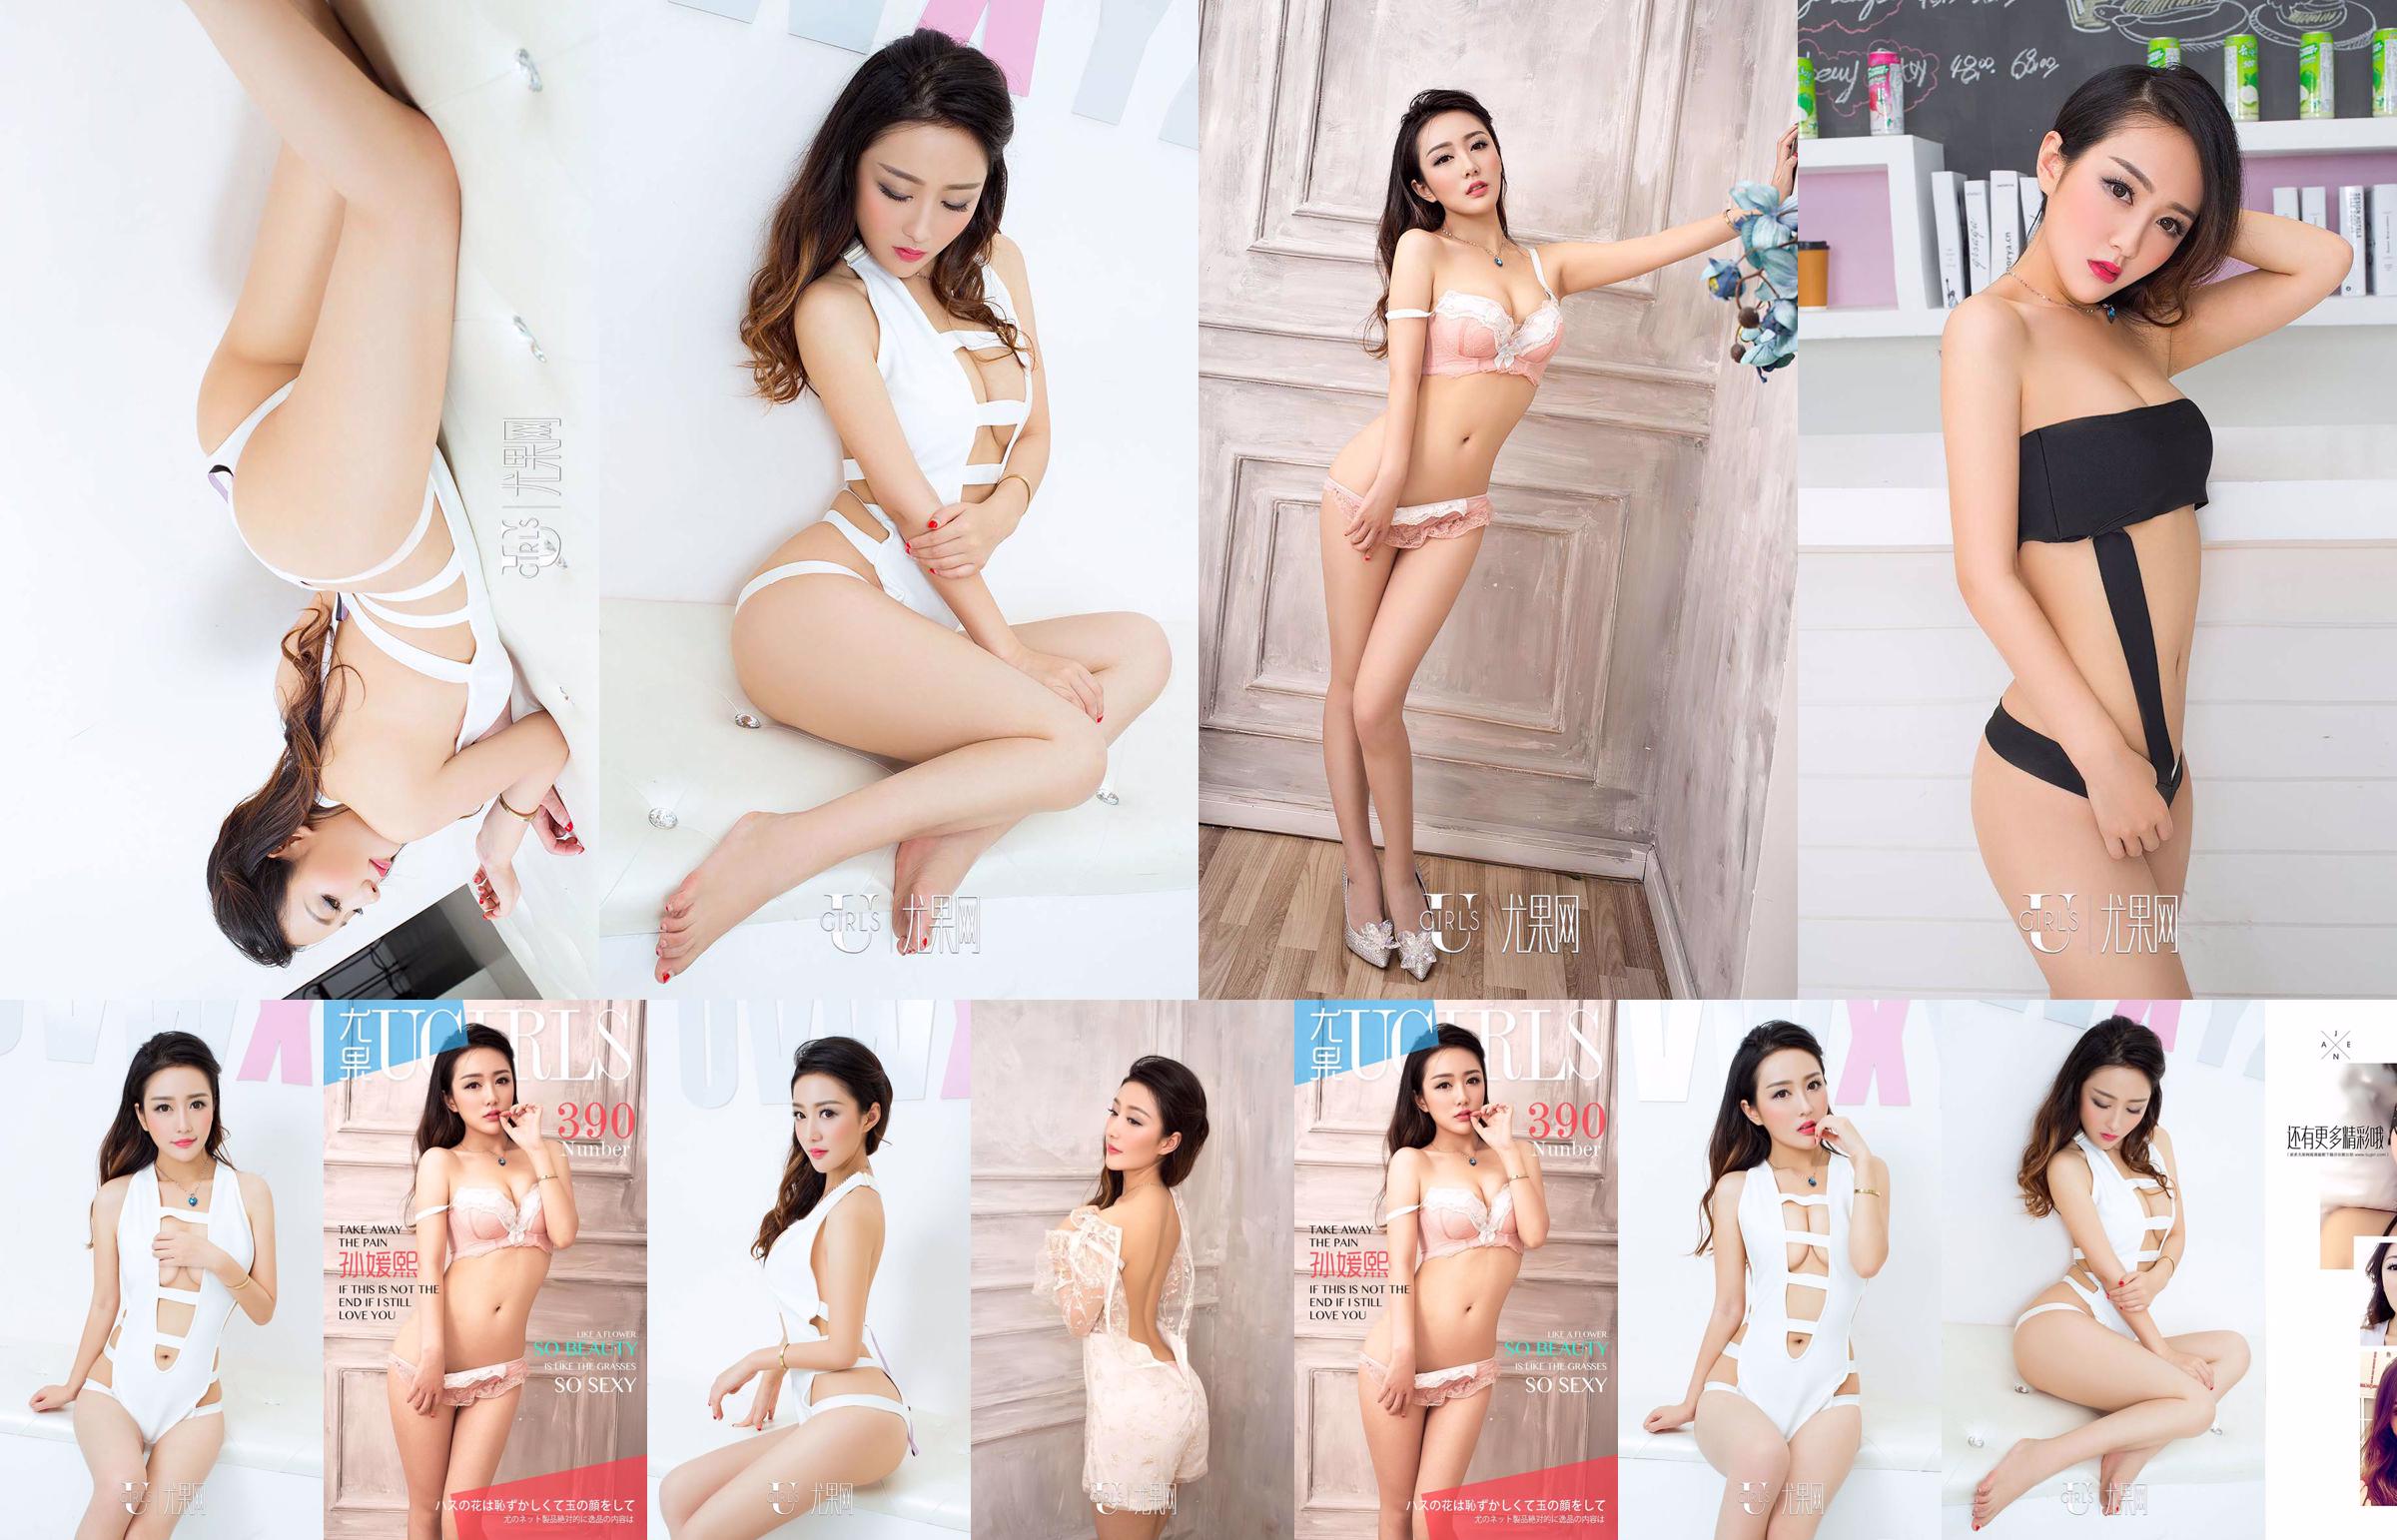 Sun Yuanxi "tão bela tão sexy" [爱 优 物 Ugirls] No.390 No.9e8bae Página 1